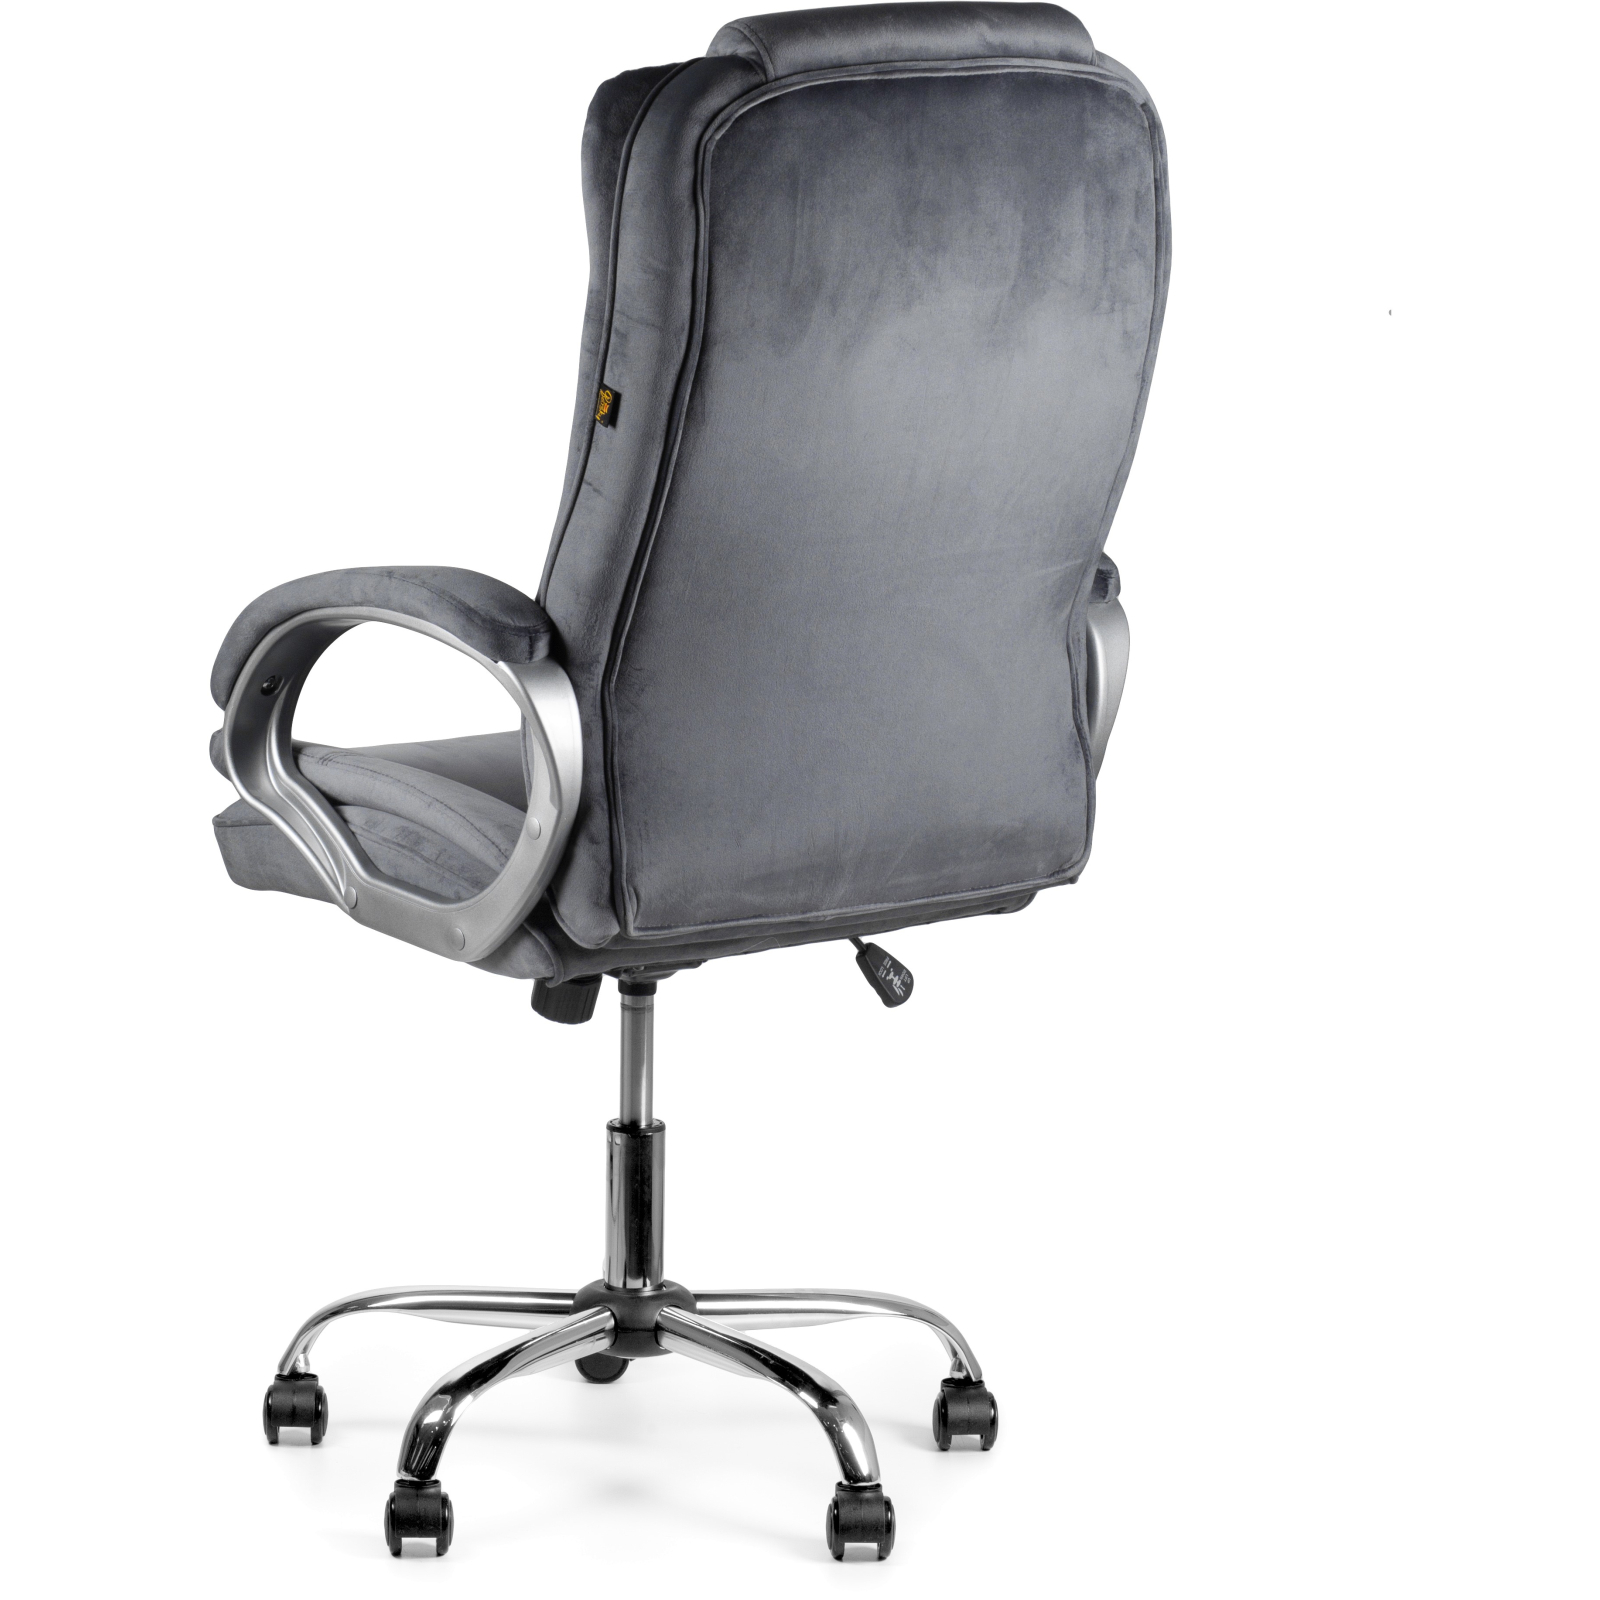 Офисное кресло Barsky Soft Microfiber Brown Soft-02 (Soft-02) изображение 5